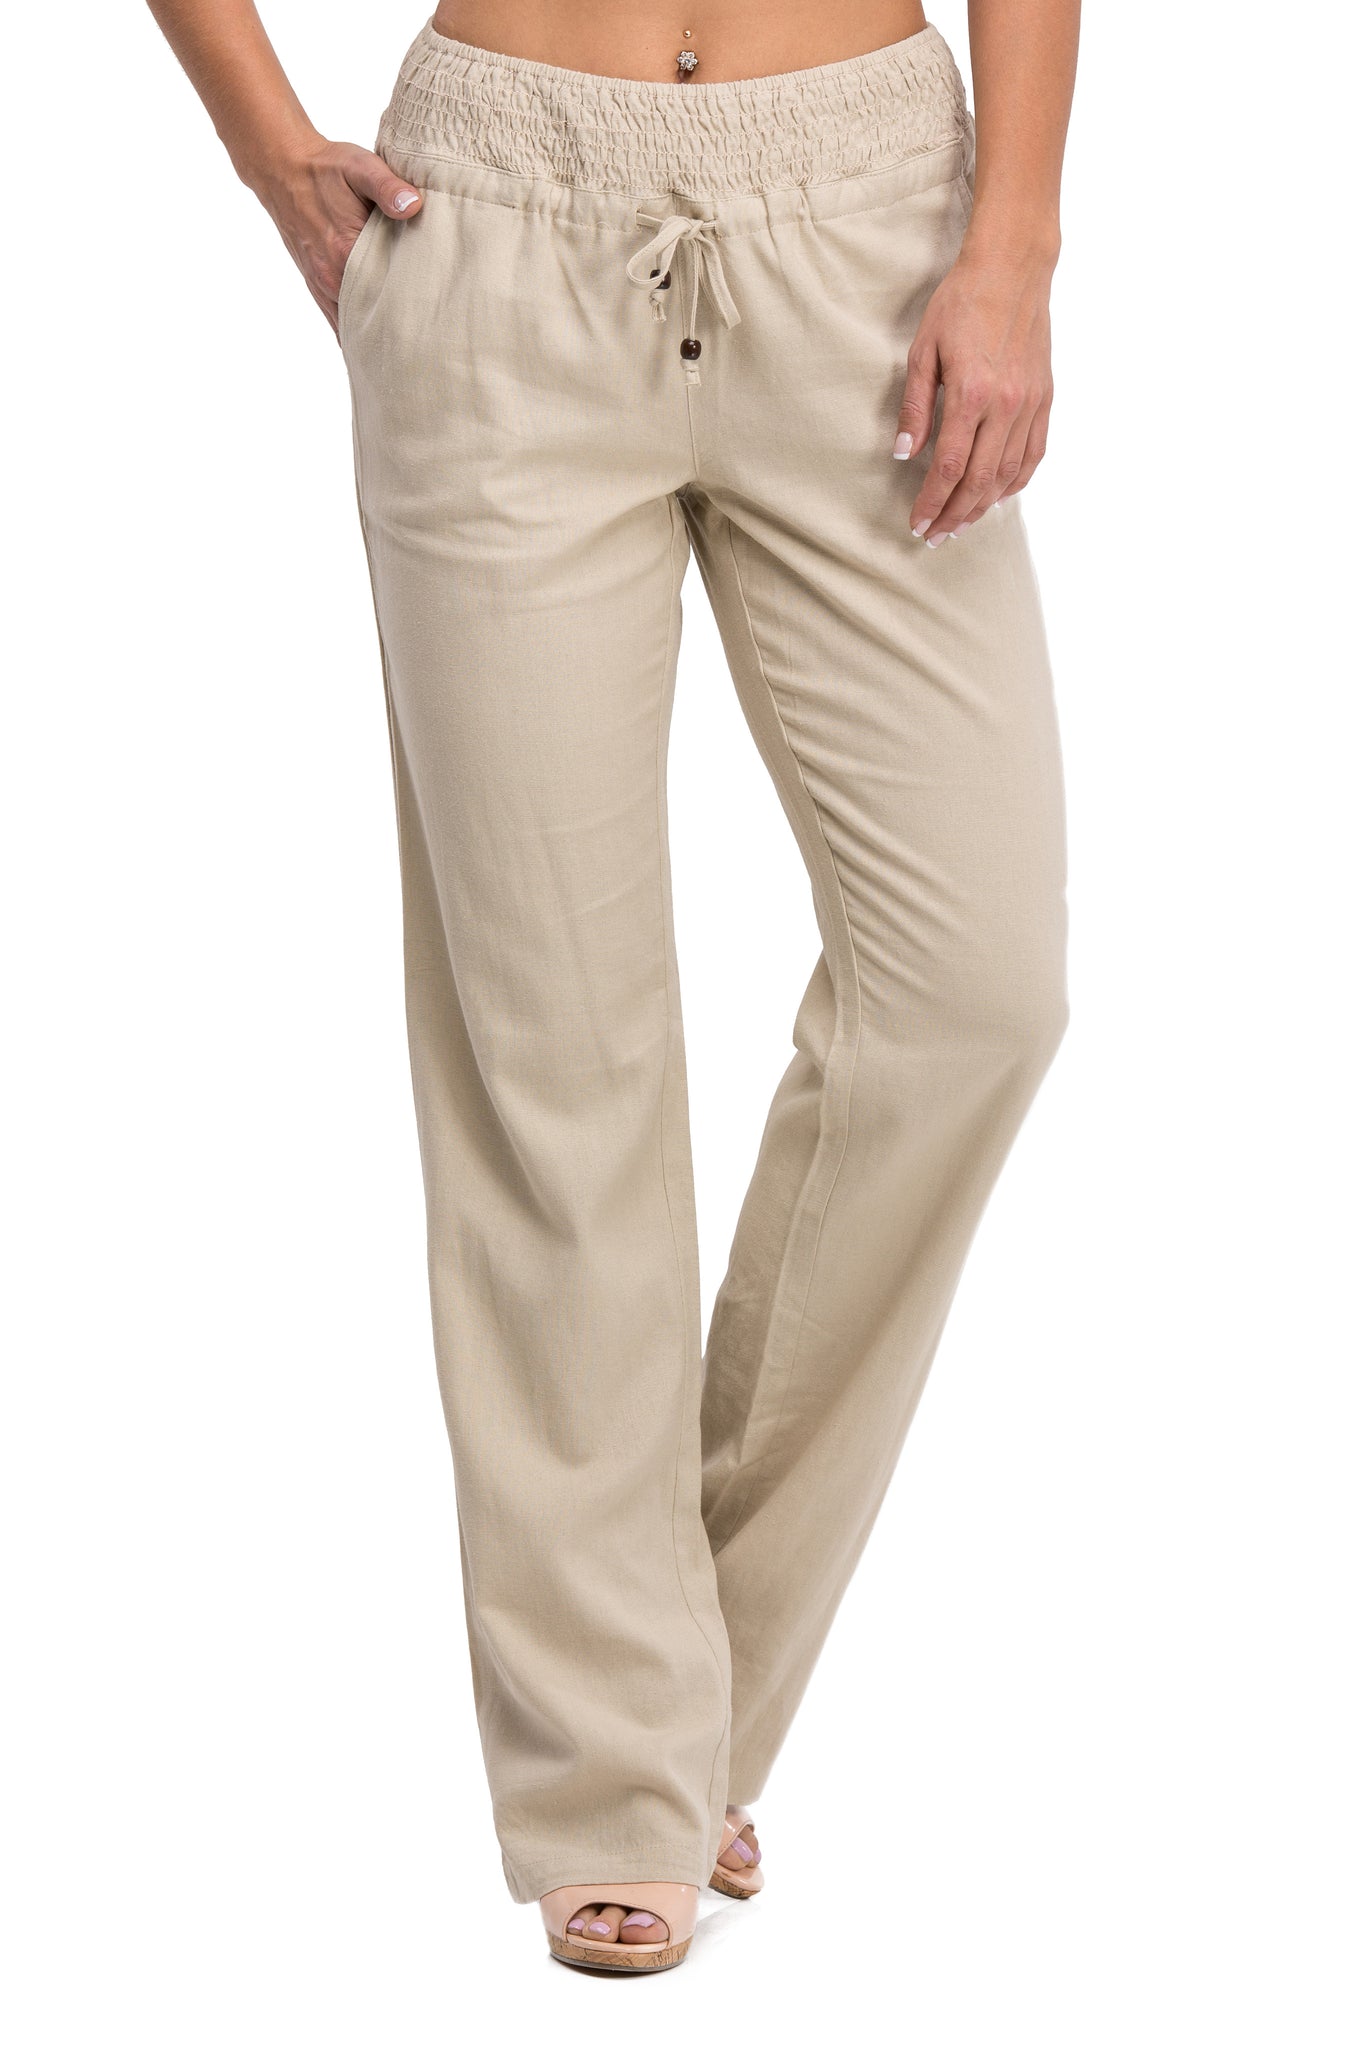 Comfy Drawstring Linen Pants Long with Smocked Band Waist (Natural)